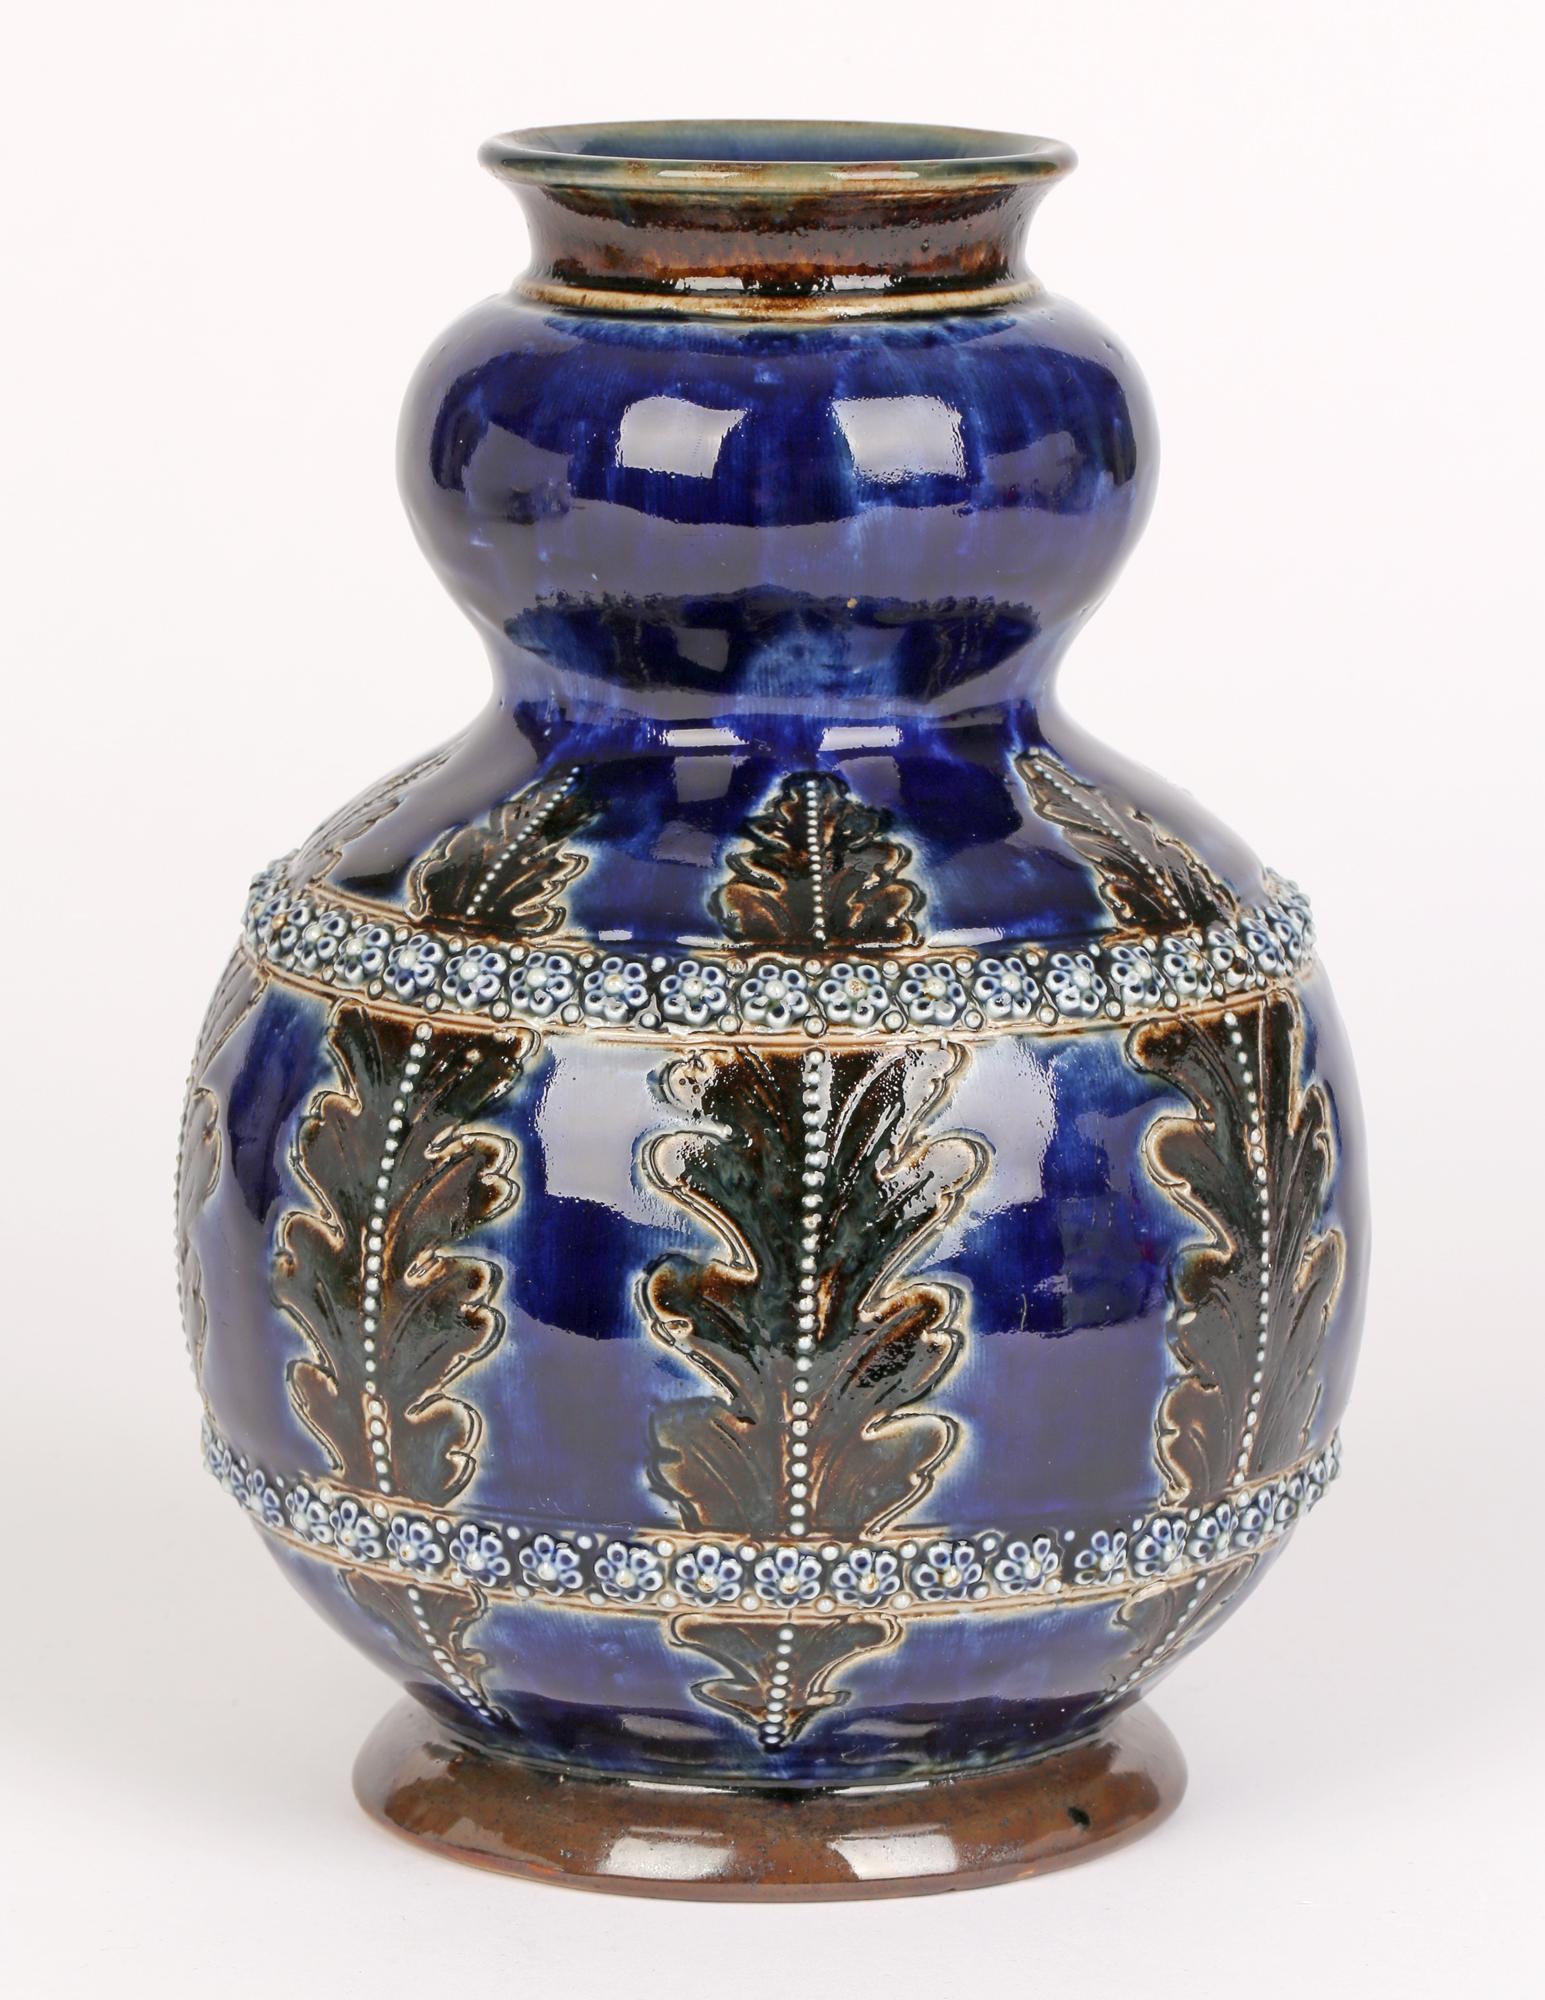 George Tinworth for Doulton Lambeth Leaf & Floral Design Art Pottery Vase 1877   4